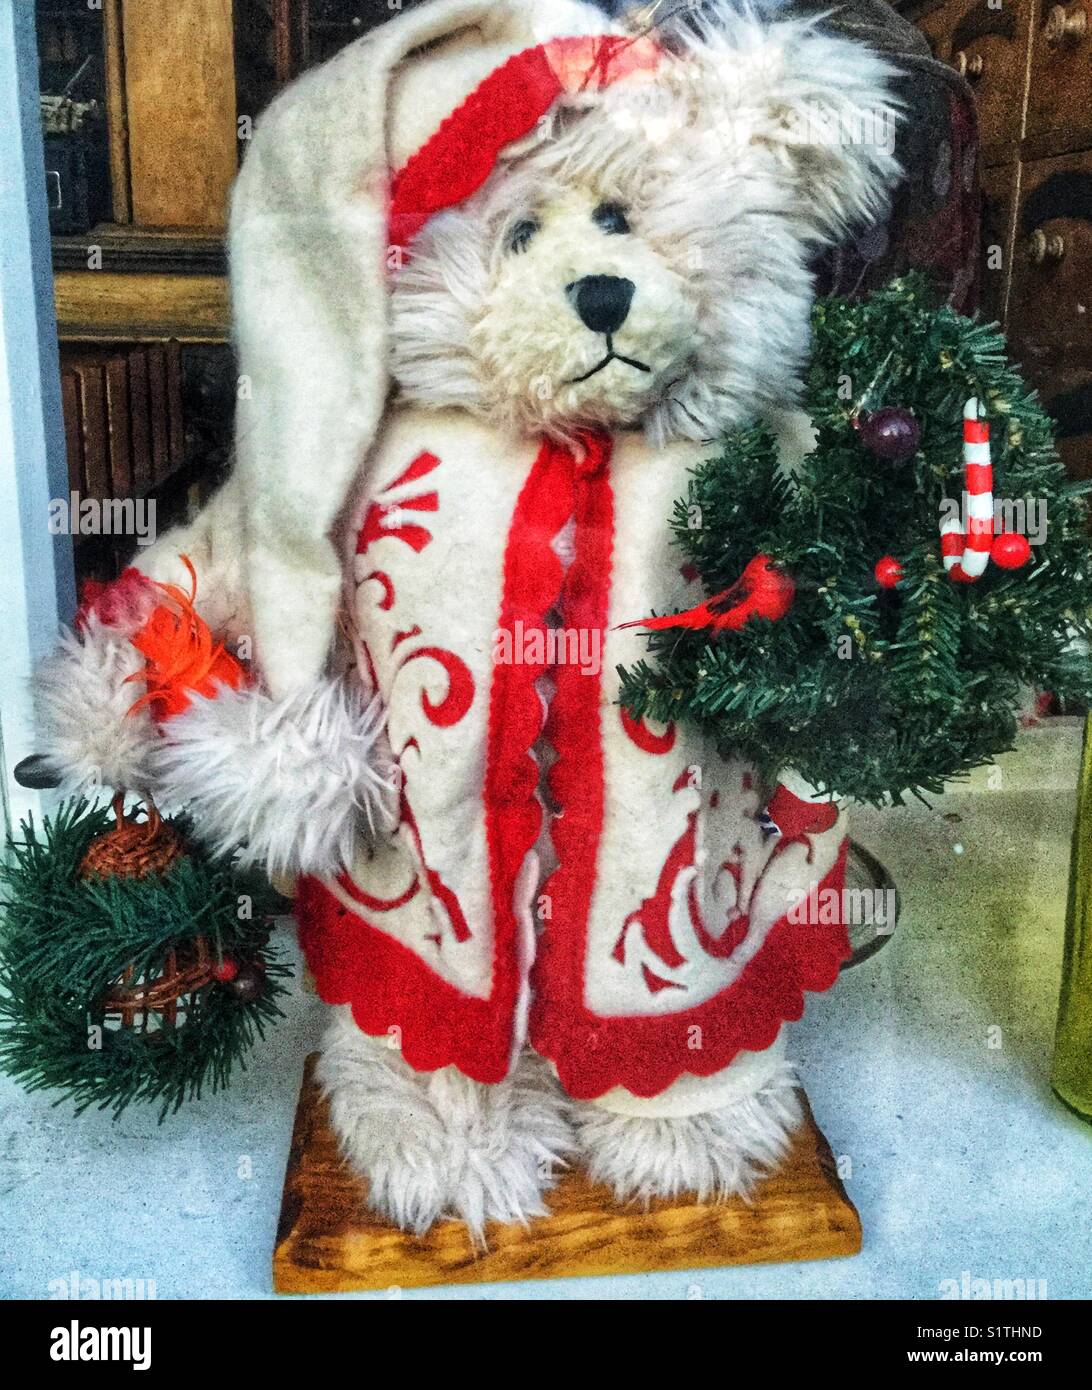 Osito de peluche blanco vestido con un abrigo rojo y blanco para la temporada navideña. Foto de stock